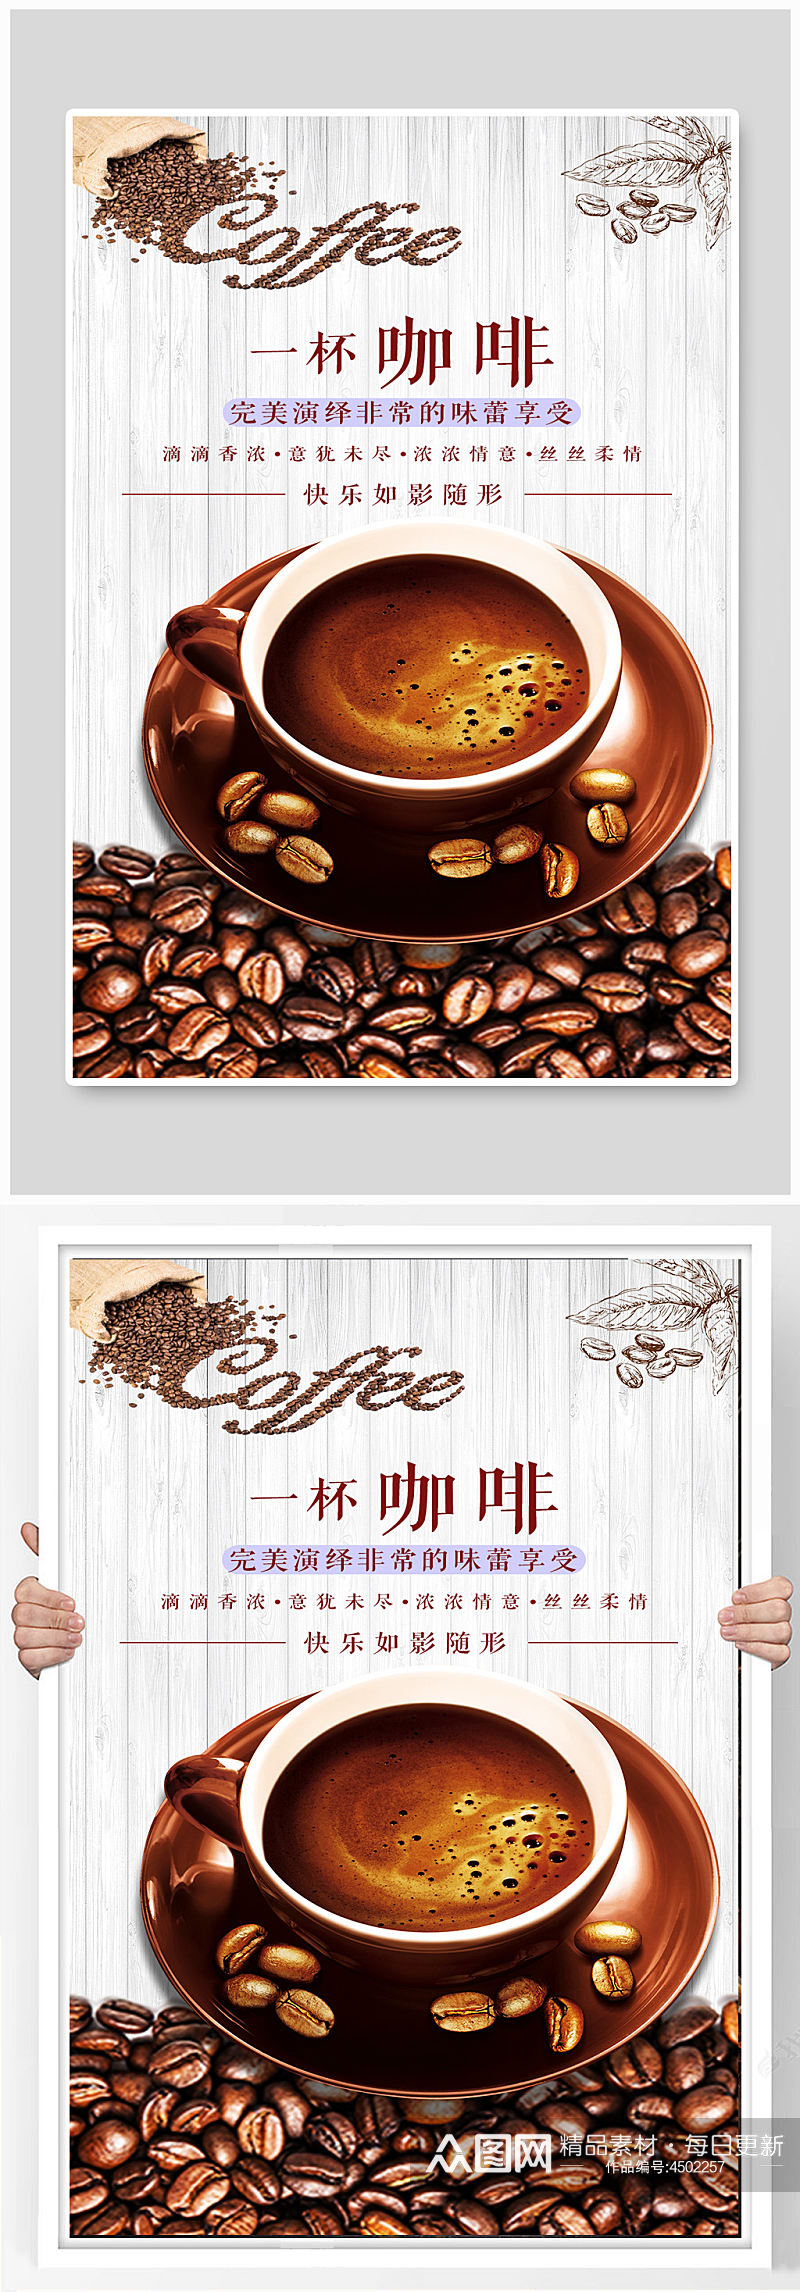 咖啡居中排版海报设计素材